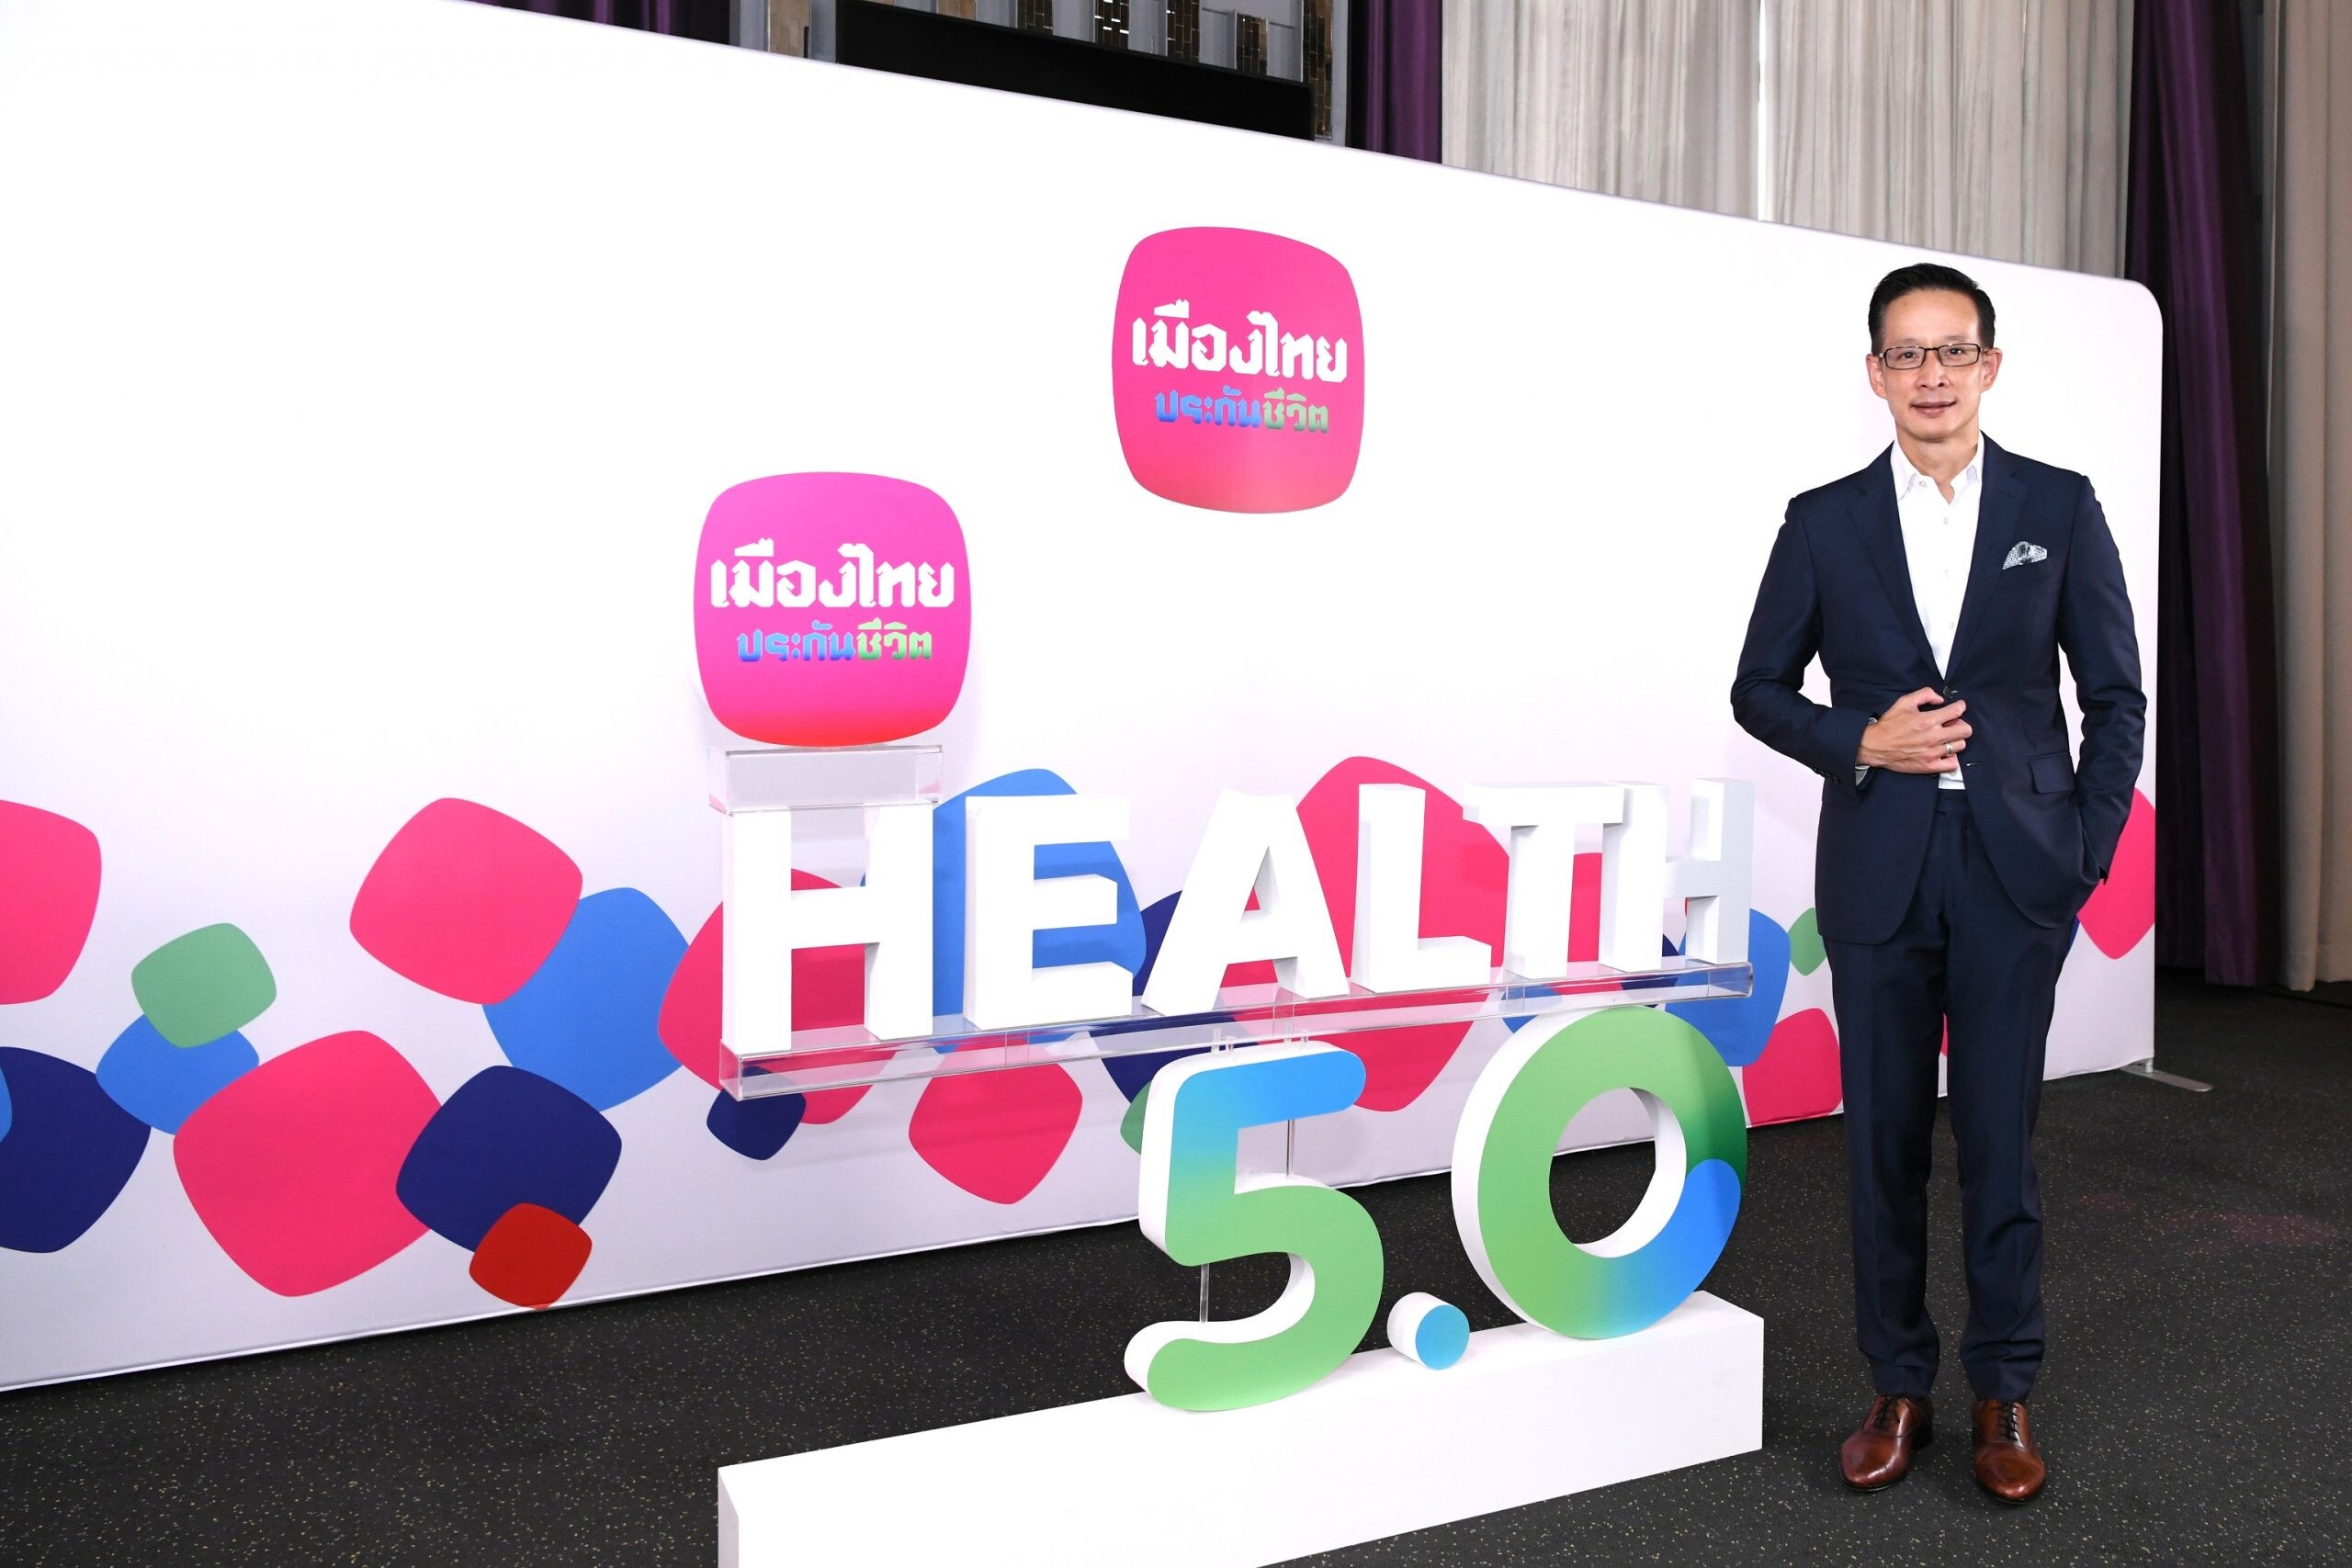 เมืองไทยประกันชีวิต เปิดกลยุทธ์ "Health 5.0" เดินหน้าตอบโจทย์ทุกความต้องการ ด้วยความคุ้มครองสุขภาพที่เข้าถึงได้อย่างเท่าเทียม